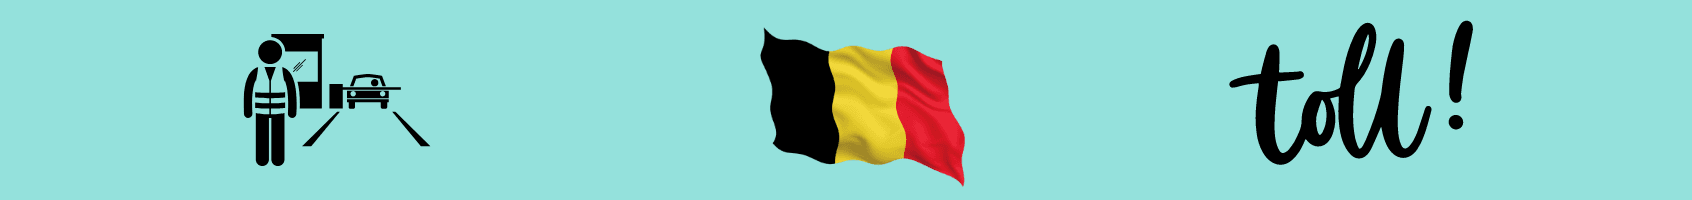 Opłaty drogowe w Belgii dla kamperów powyżej 3,5t